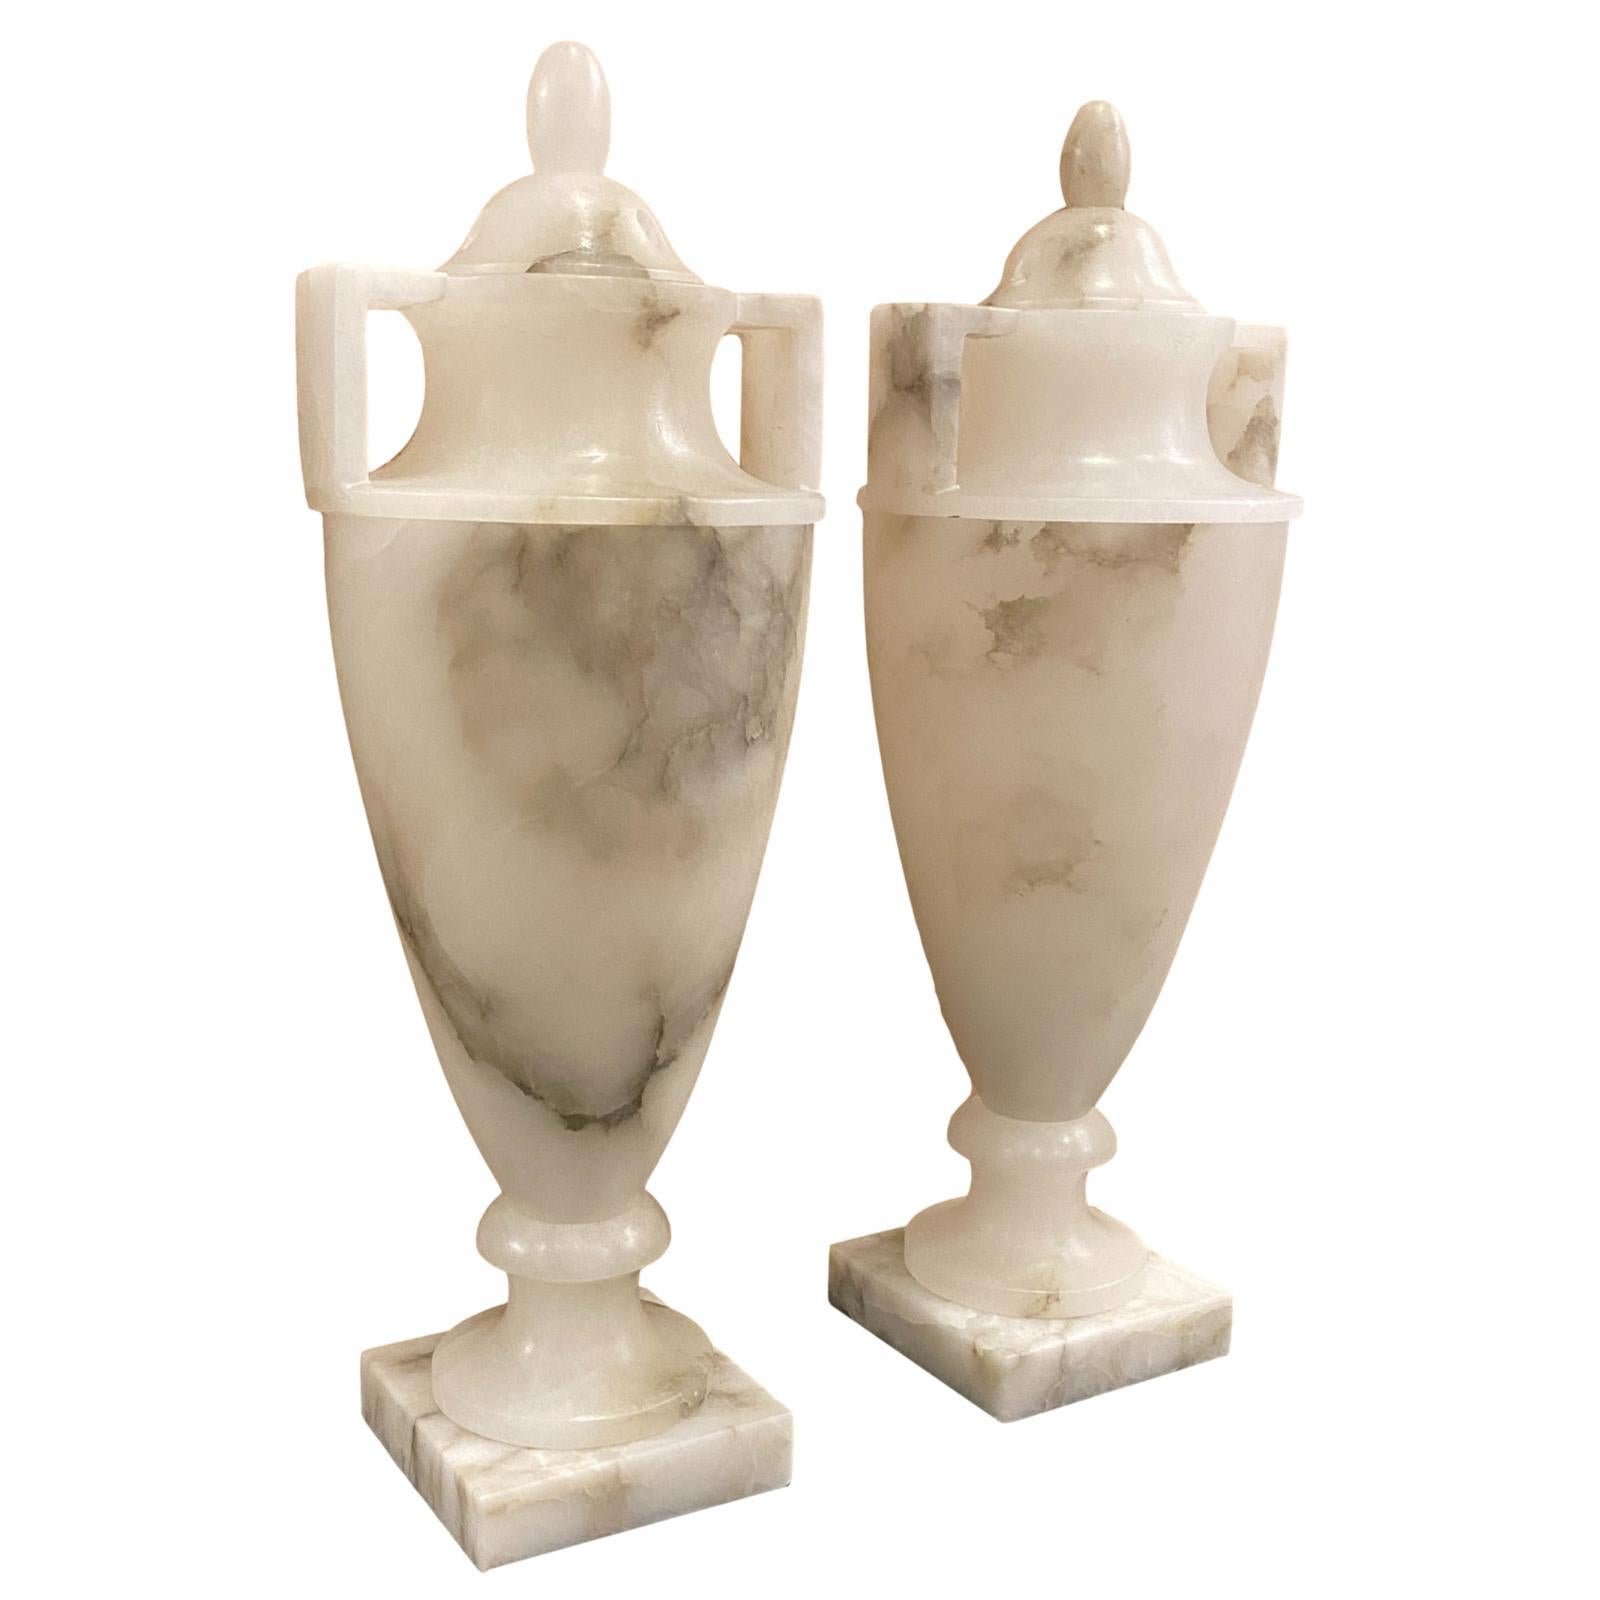 Paire de lampes de table en albâtre sculpté et à couvercle en forme d'urne, avec lumière intérieure, datant des années 1950.

Mesures :
Hauteur : 17.5